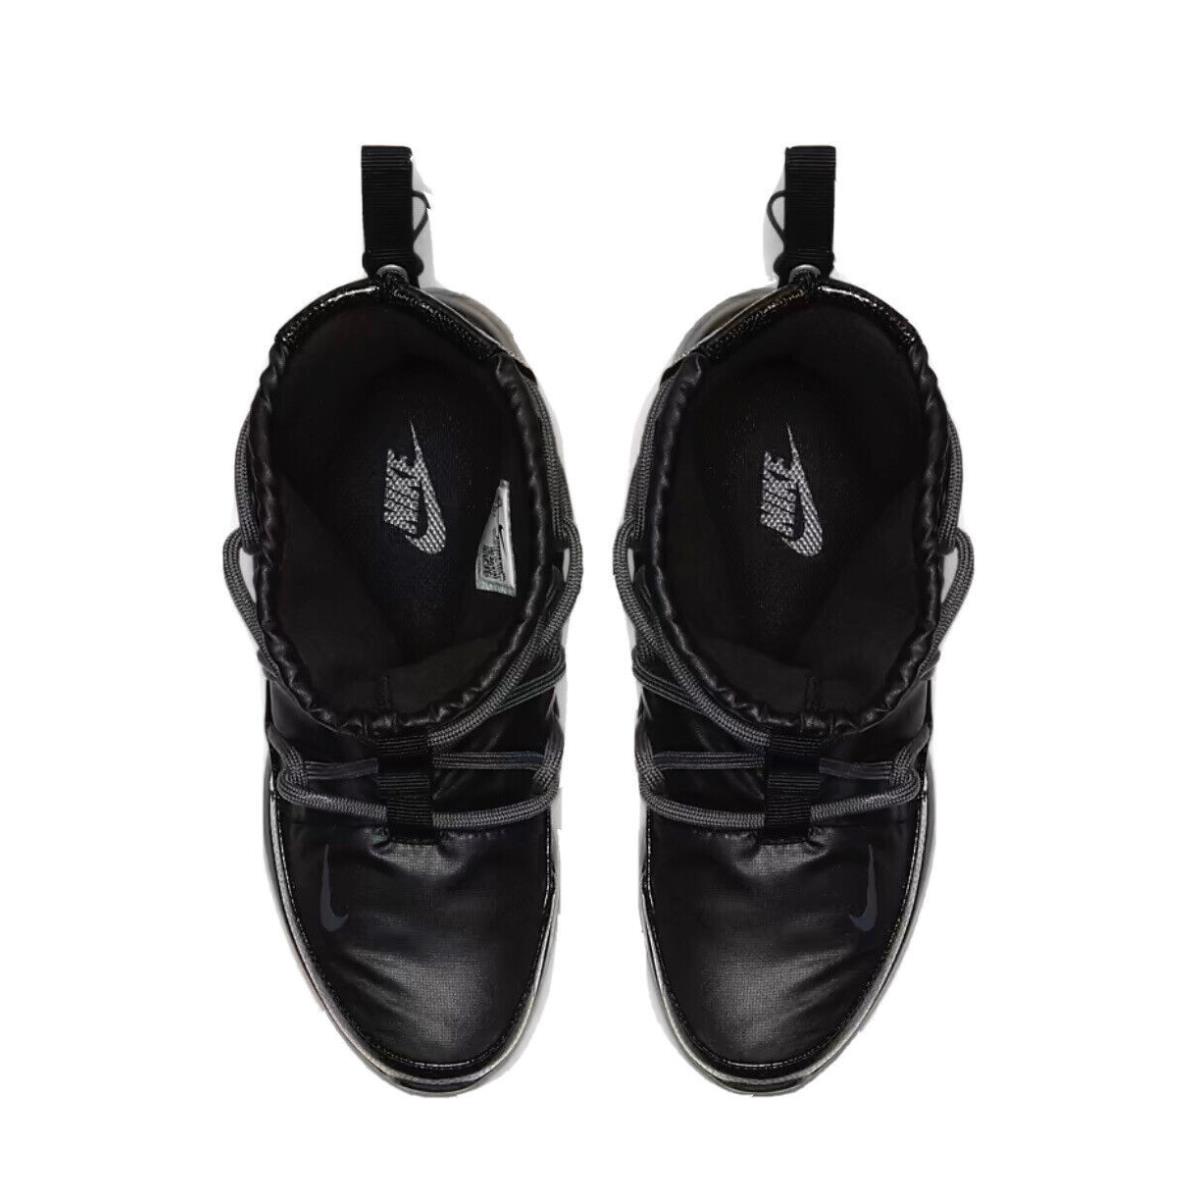 Nike shoes Tanjun - Black/Anthracite 8